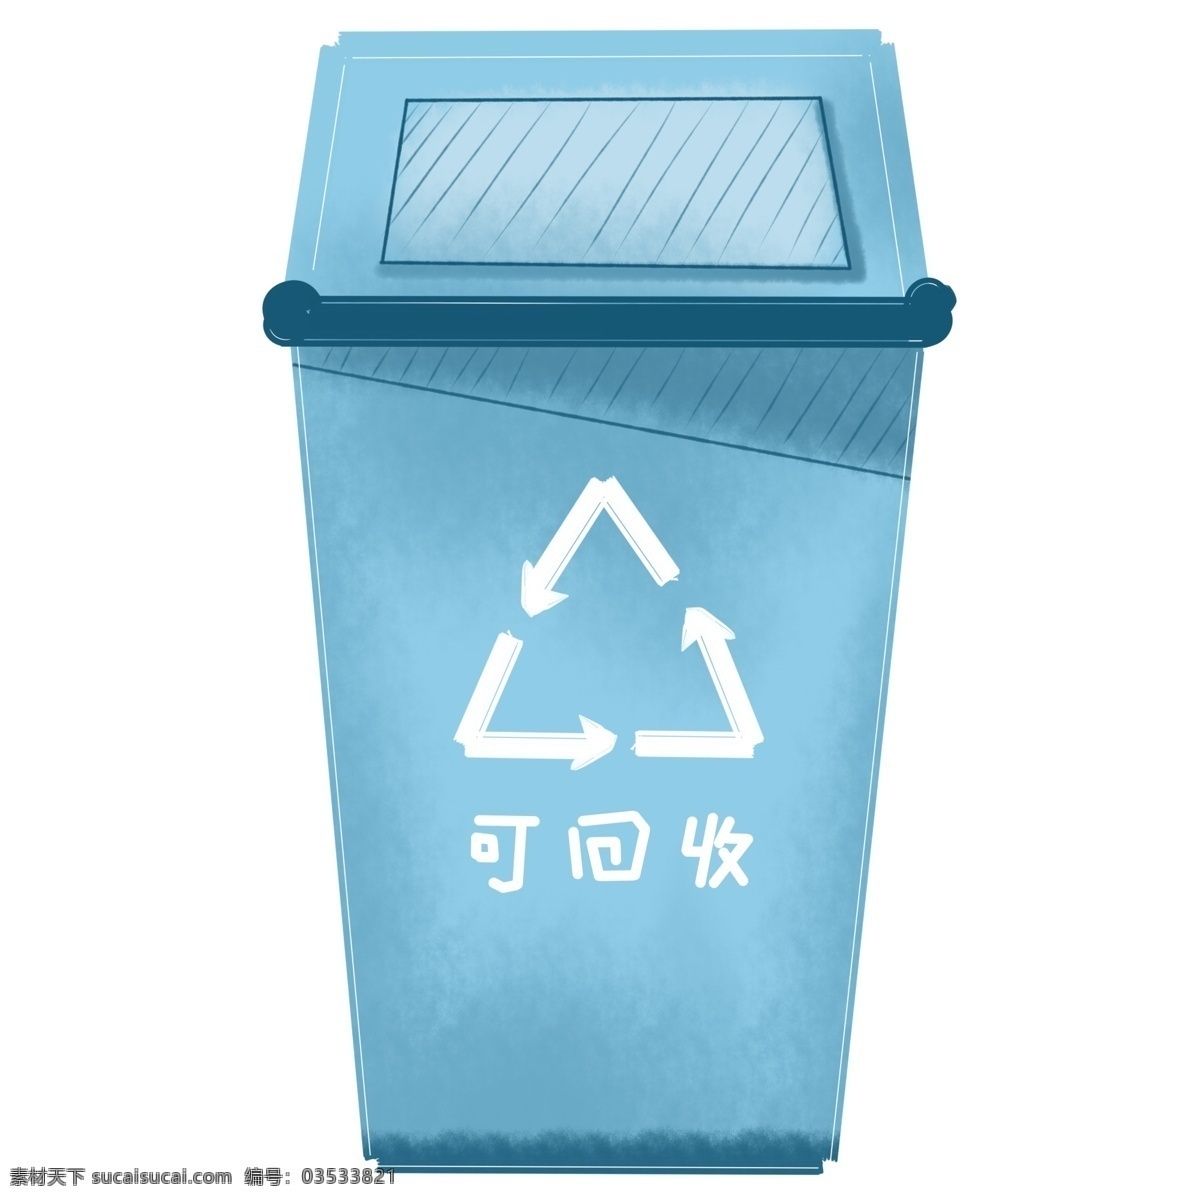 商用 手绘 环保 回收 垃圾 分类 垃圾桶 元素 海报素材 插画 可回收 垃圾分类